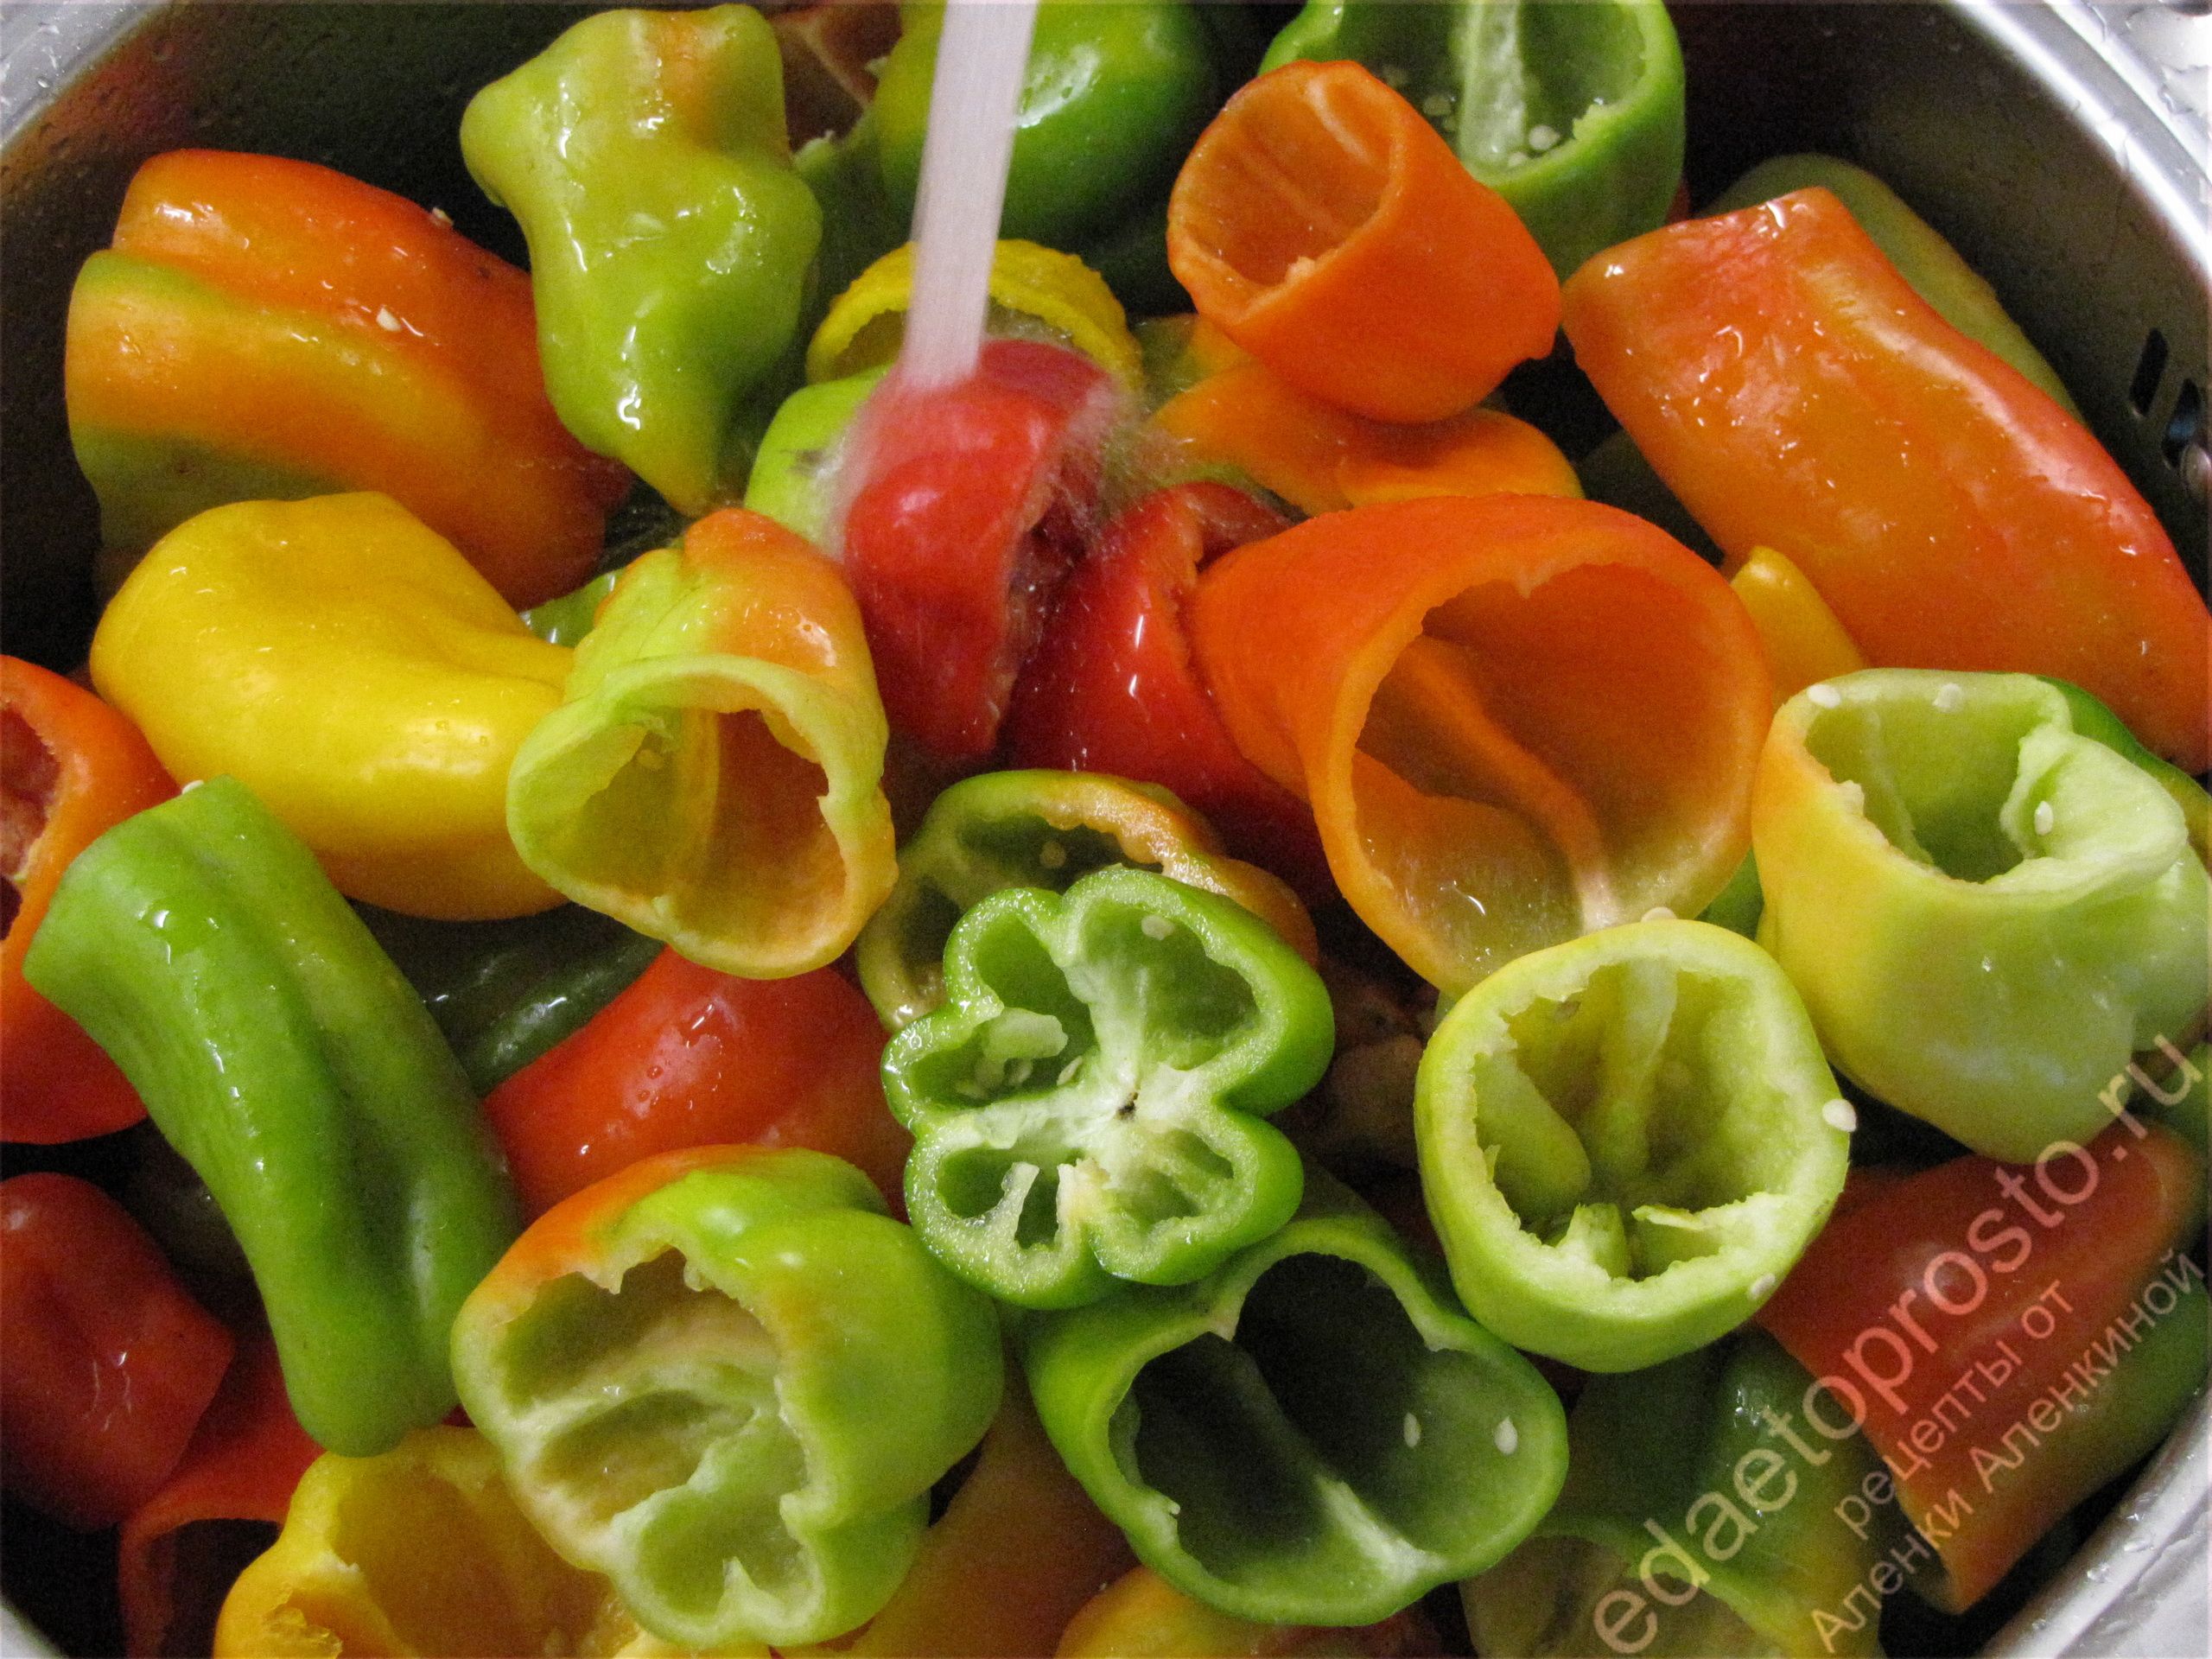 очищенные сладкие перцы под струей воды фото, красивое фото овощей